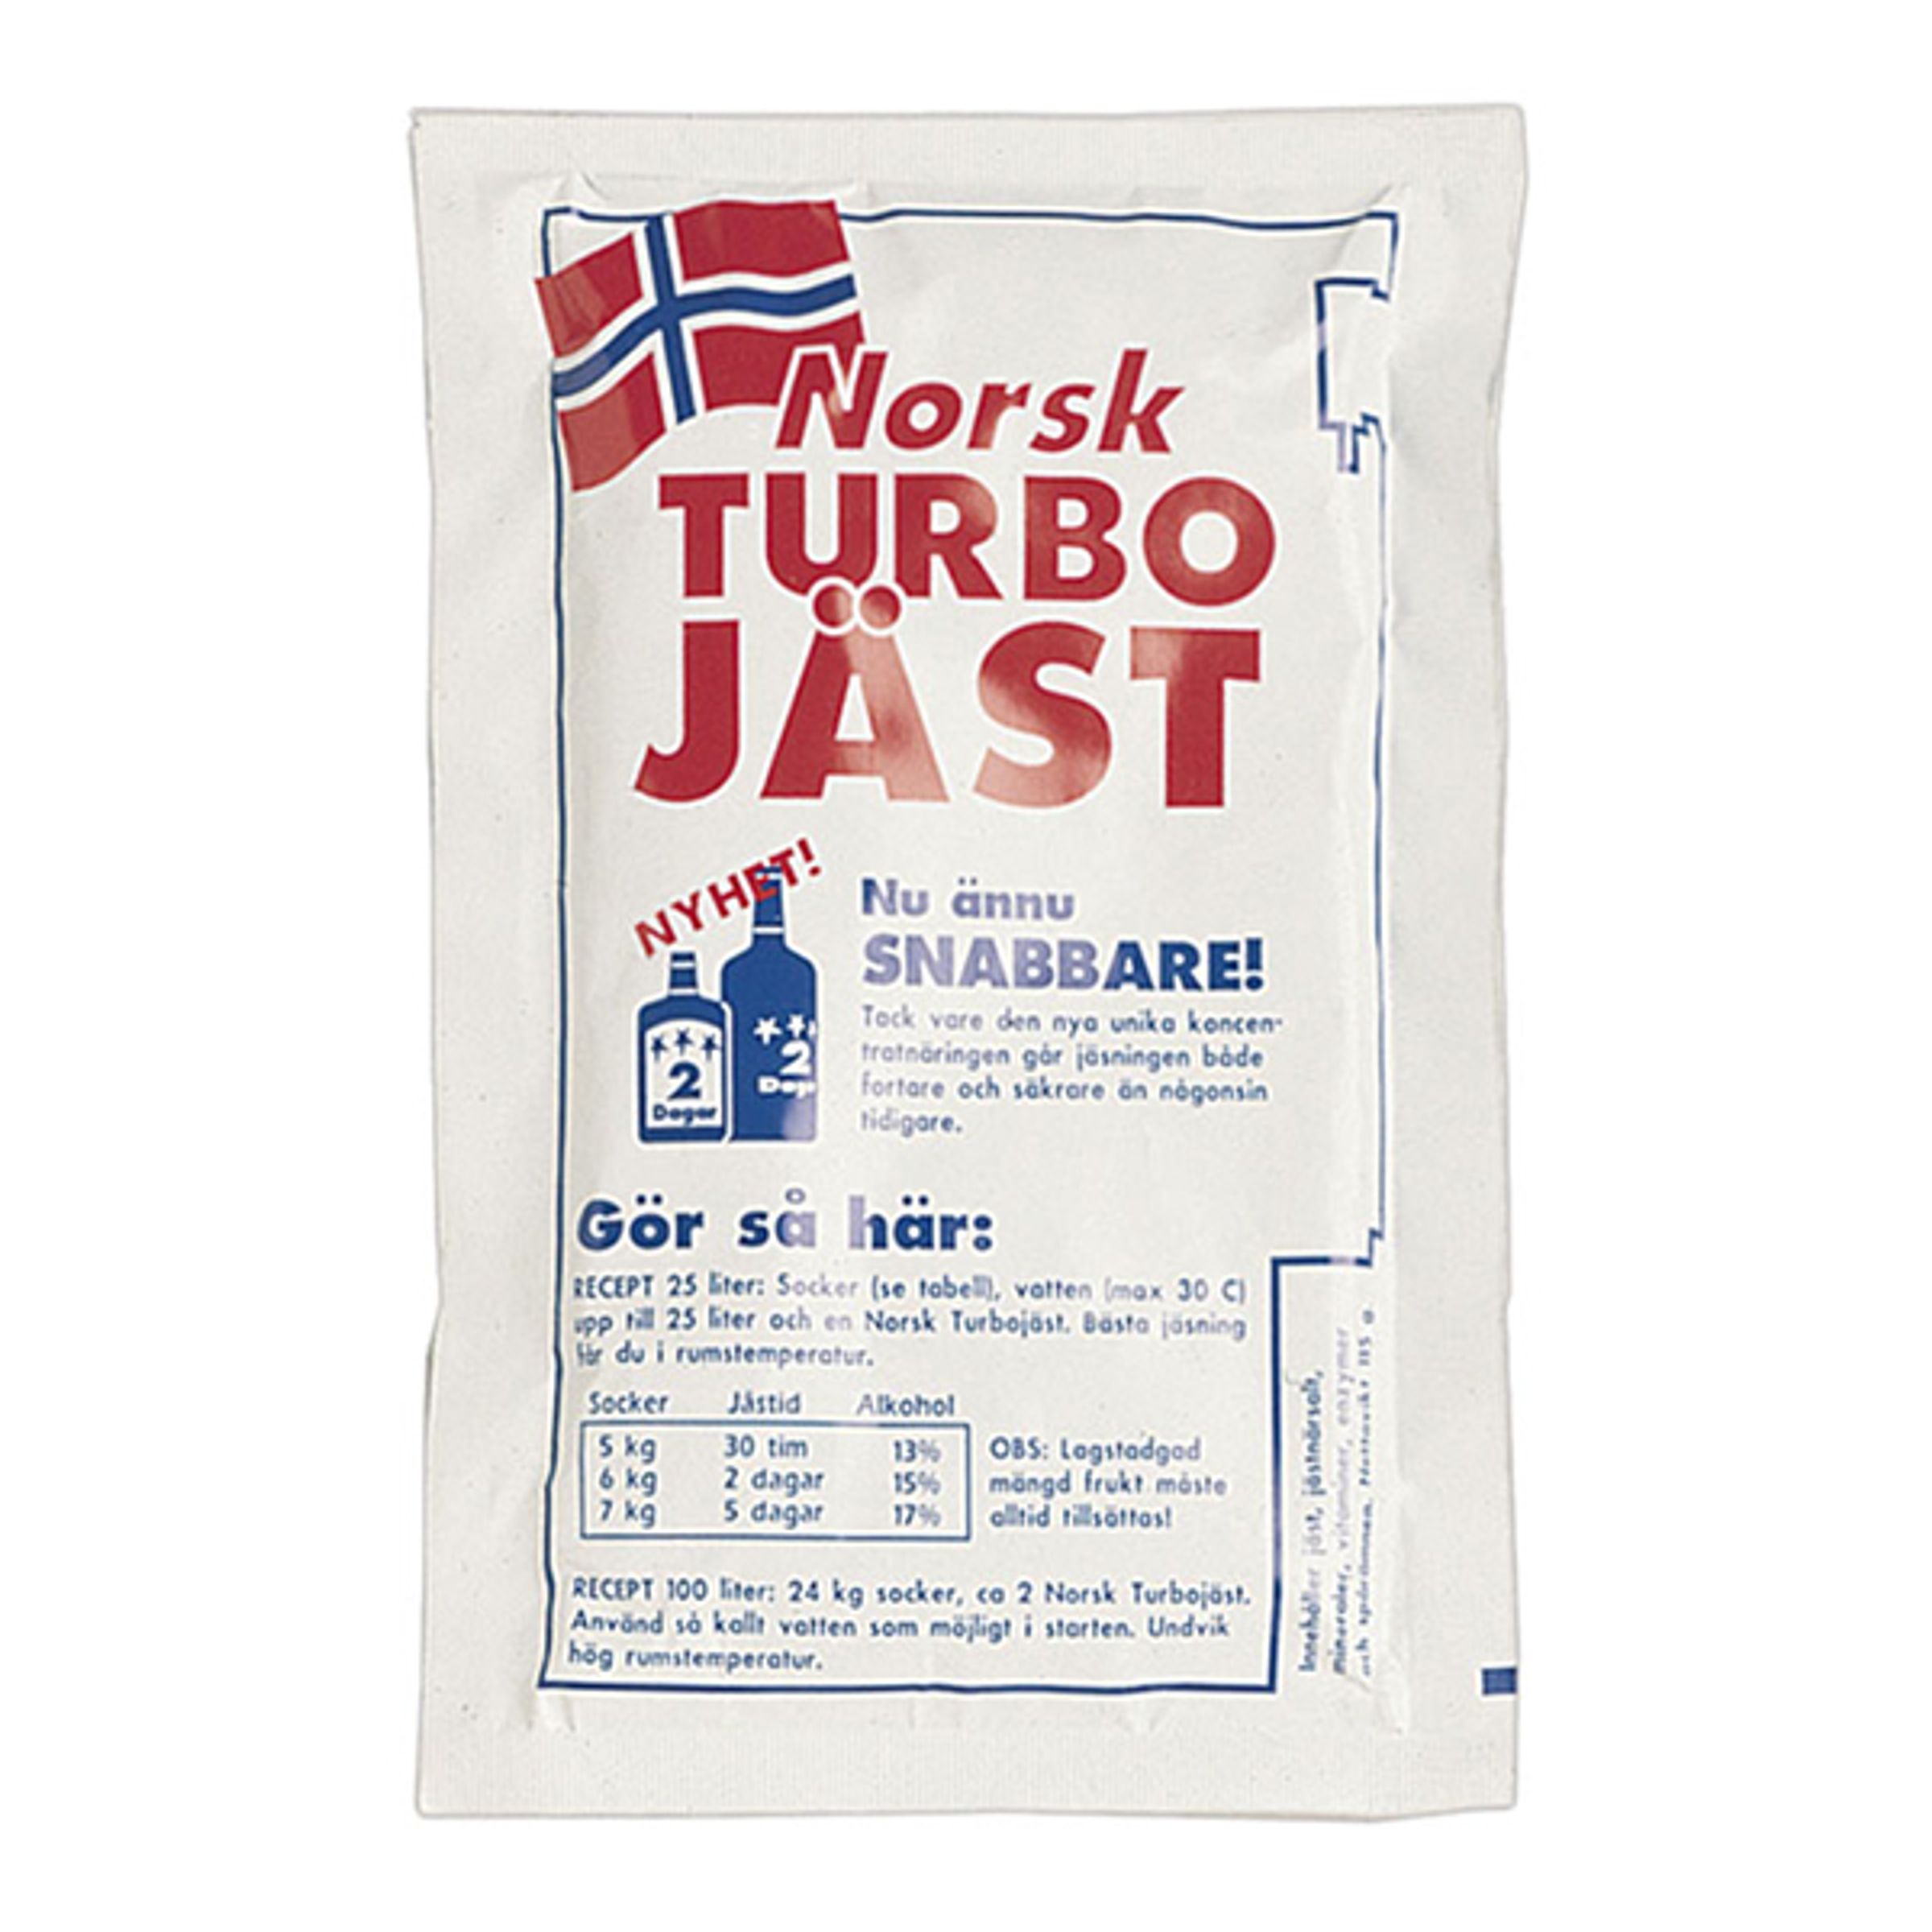 Norsk Turbojäst - 6 kg